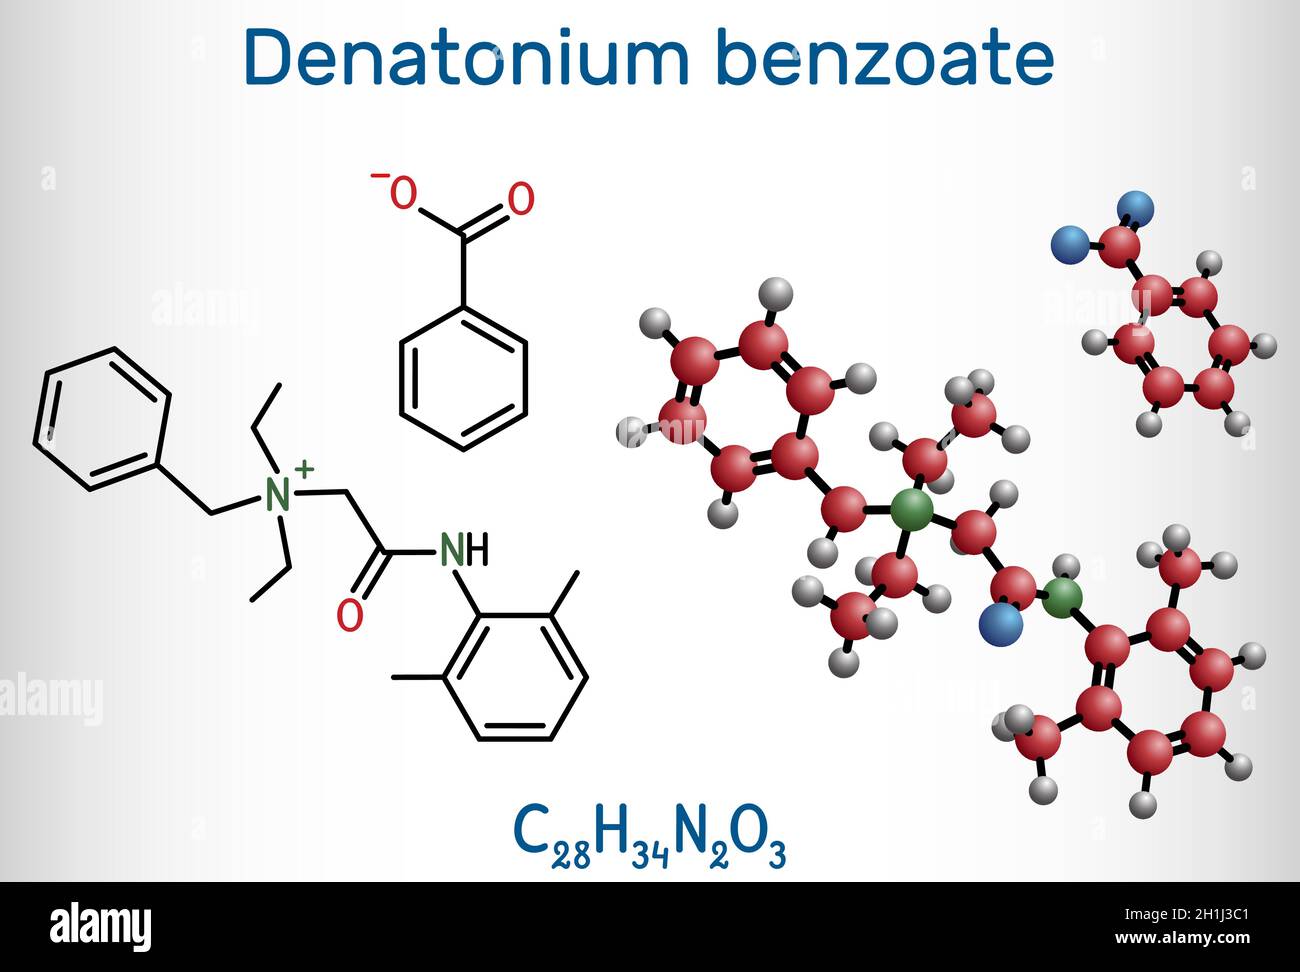 Denatonium-Benzoat-Molekül. Es hat den bittersten Geschmack aller Verbindungen, die der Wissenschaft bekannt sind. Strukturelle chemische Formel und Molekülmodell. Vektor-il Stock Vektor